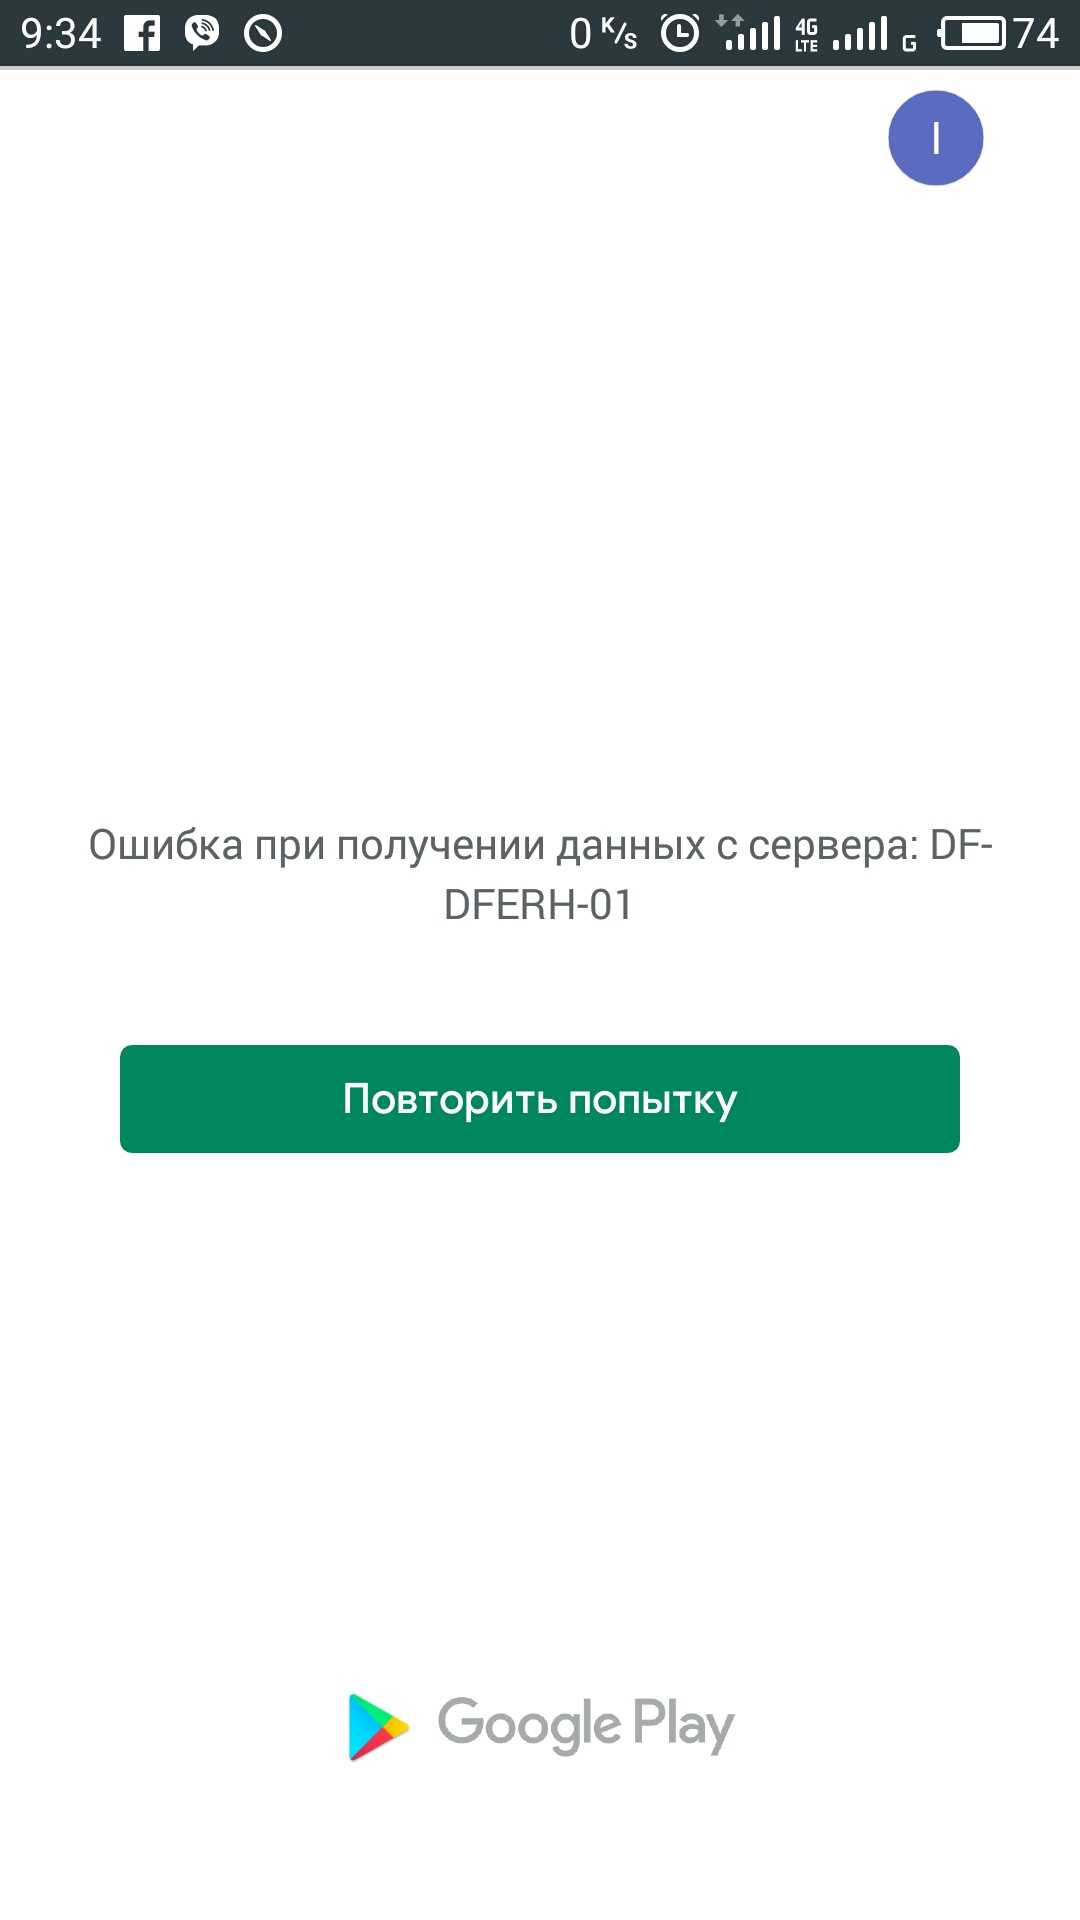 Ошибка при получении данных с сервера df-dferh-01 в play market как исправить